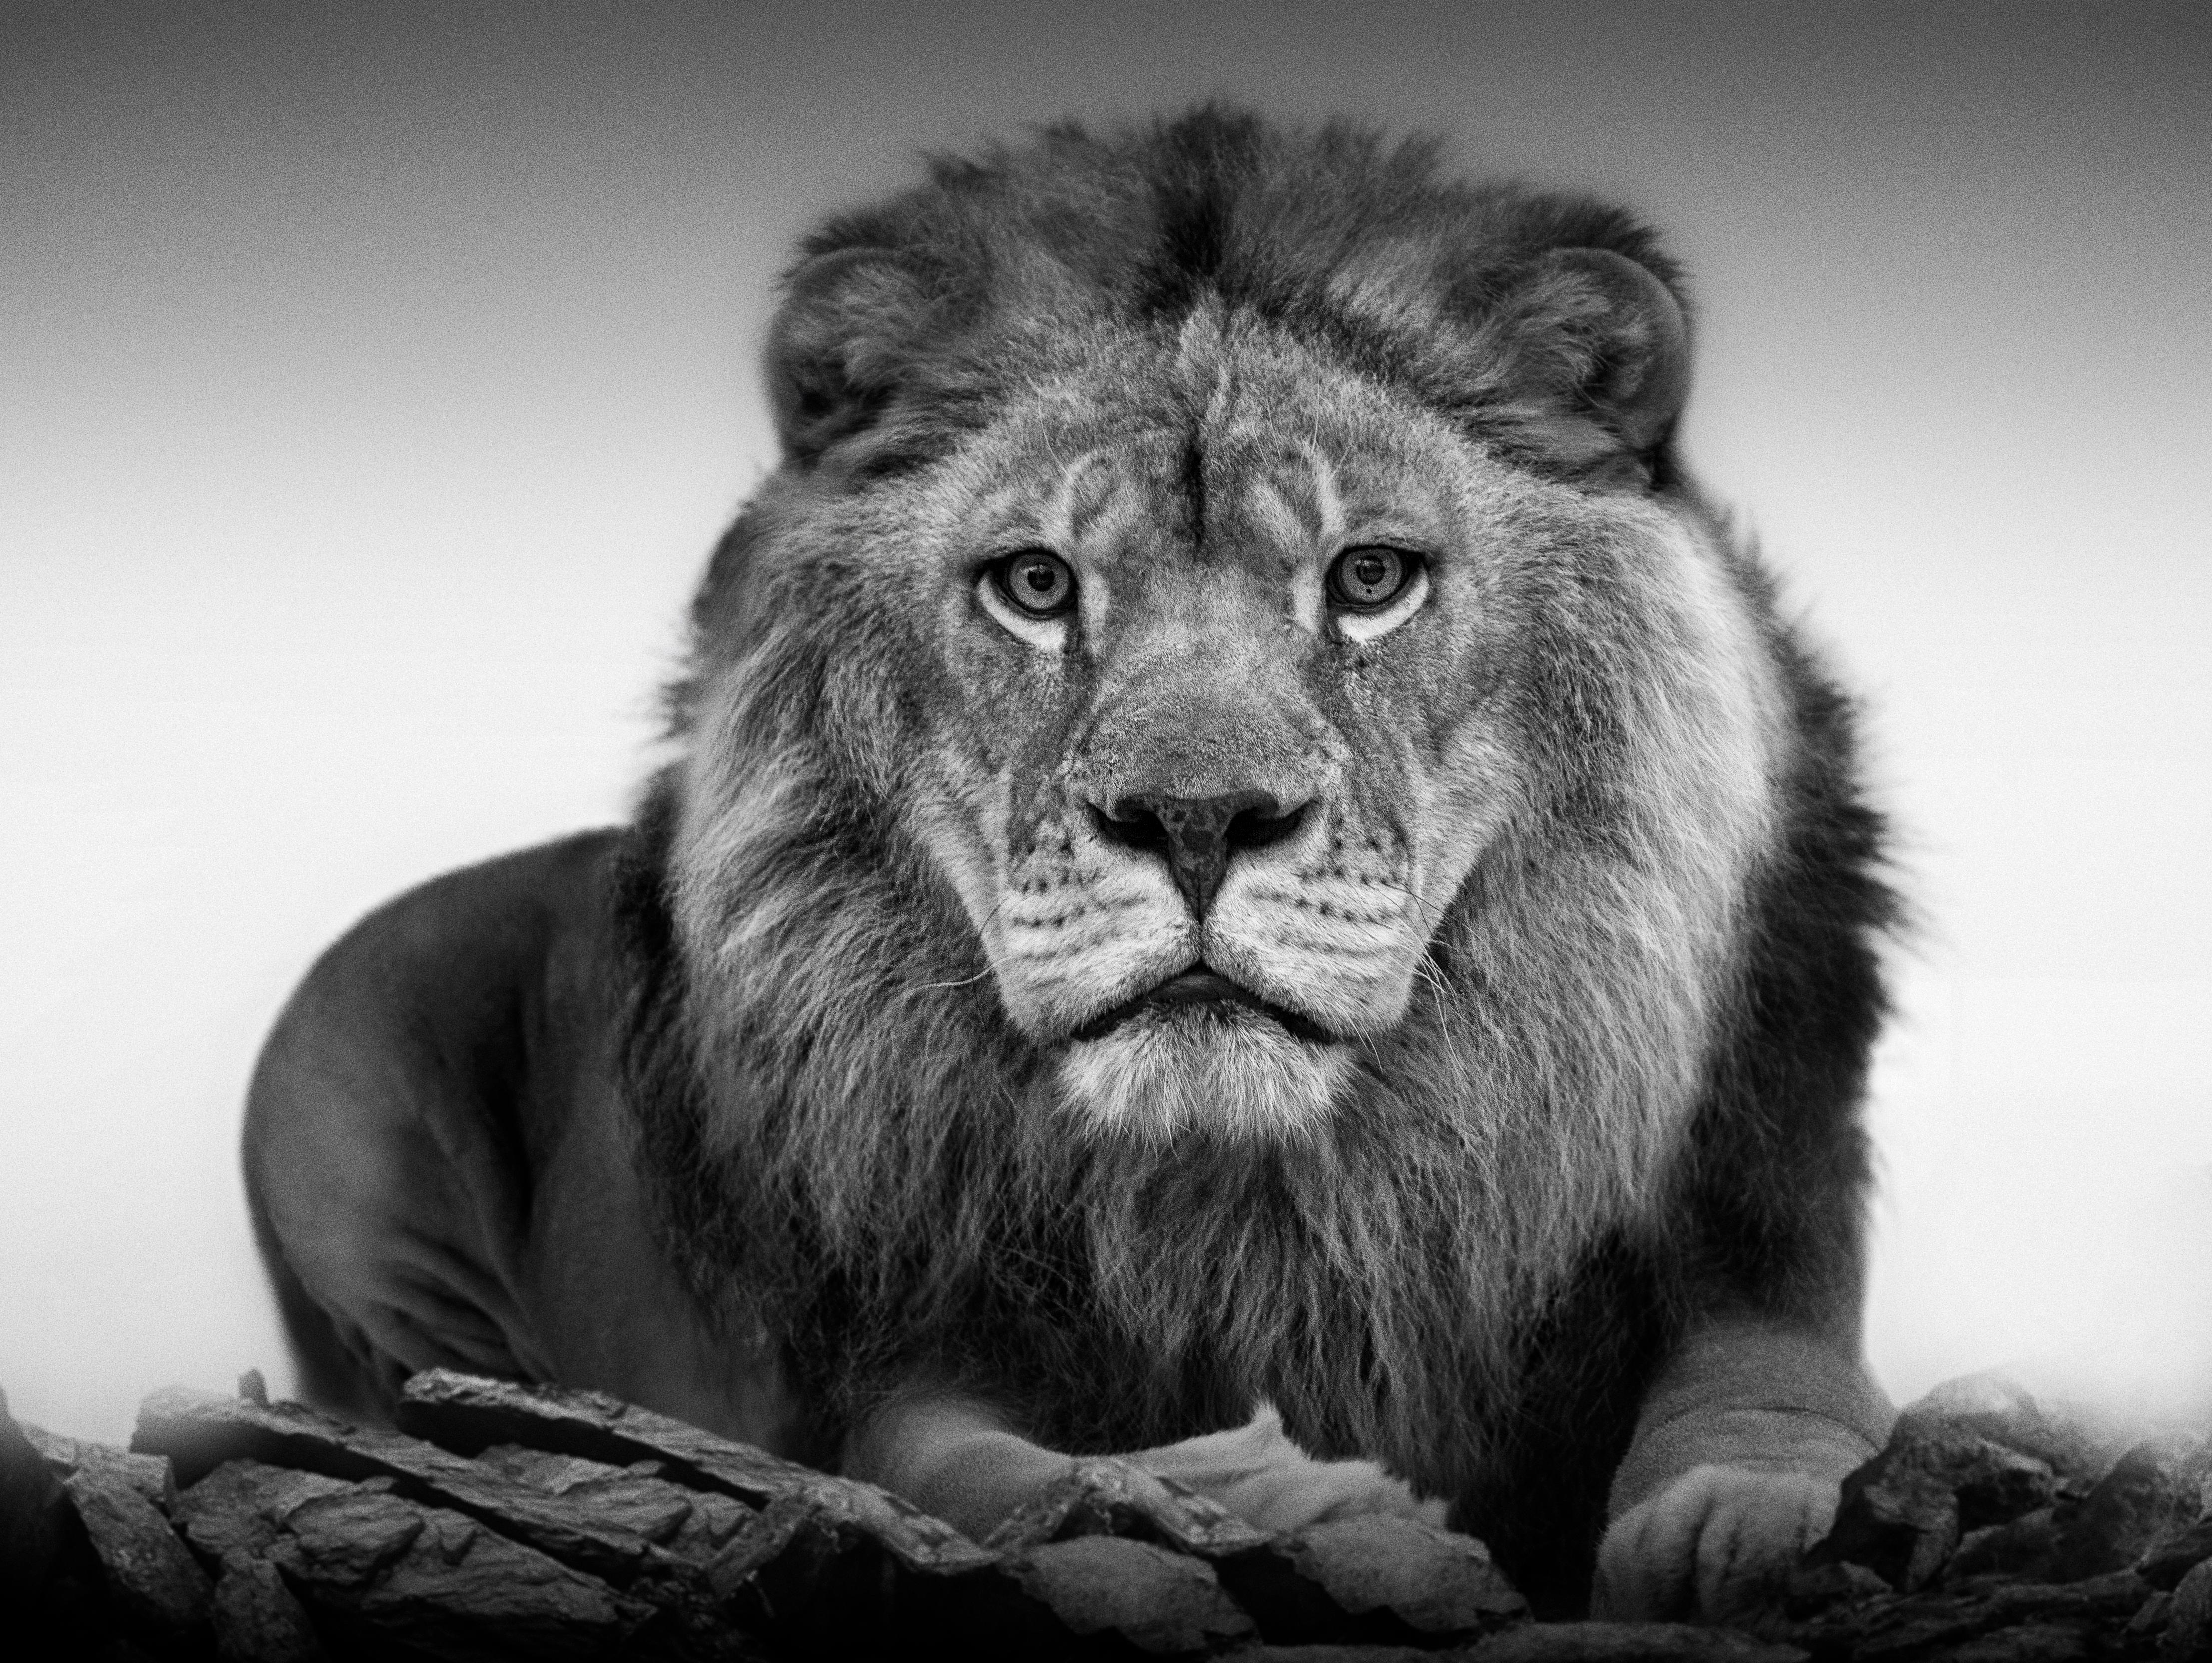 36x48  "Lion Portrait", Black and White Lion Photography  Photograph Signed Art